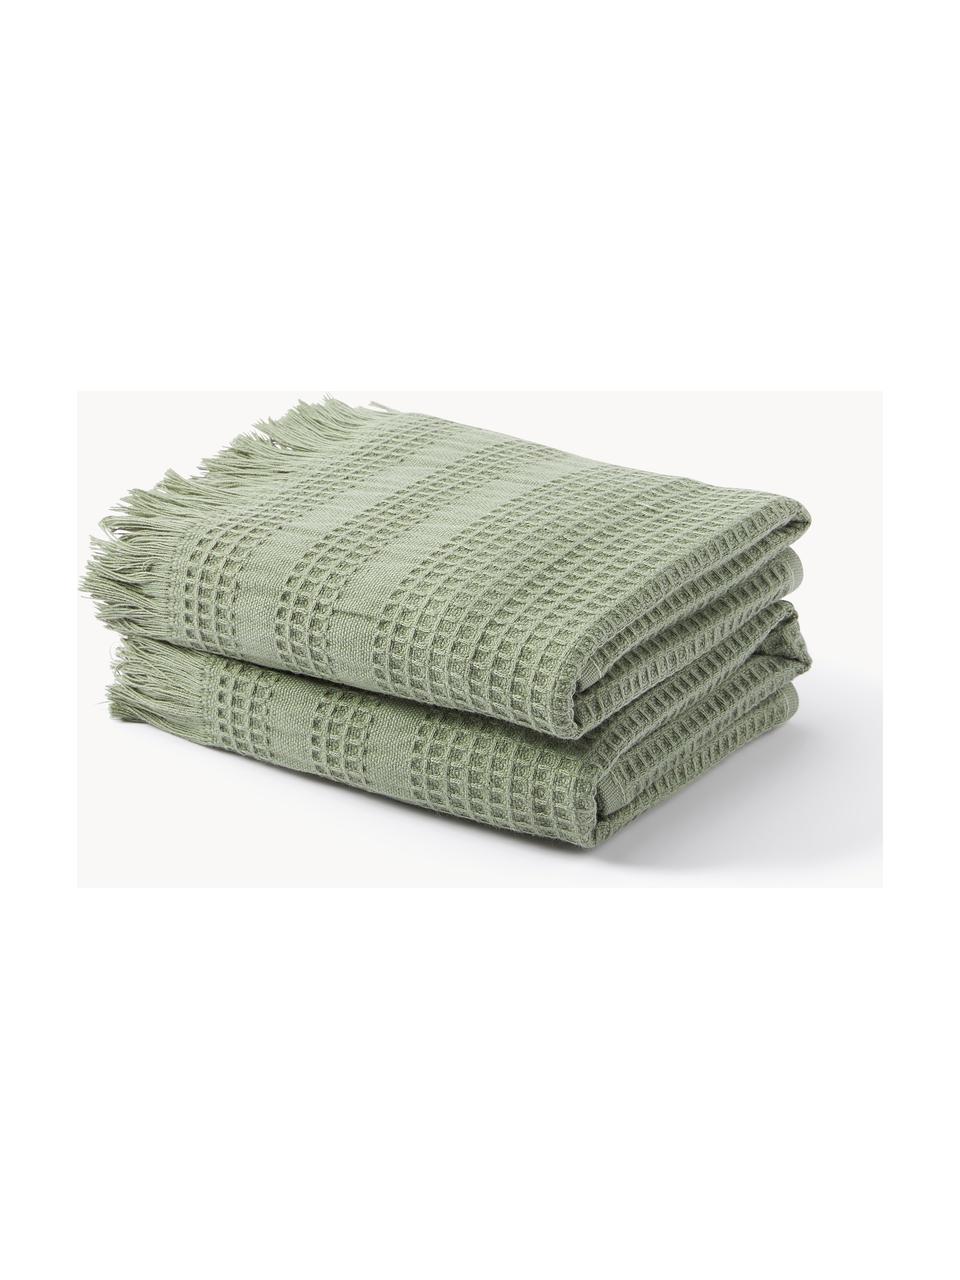 Ręcznik z piki waflowej Yara, różne rozmiary, Oliwkowy zielony, Ręcznik, S 50 x D 100 cm, 2 szt.